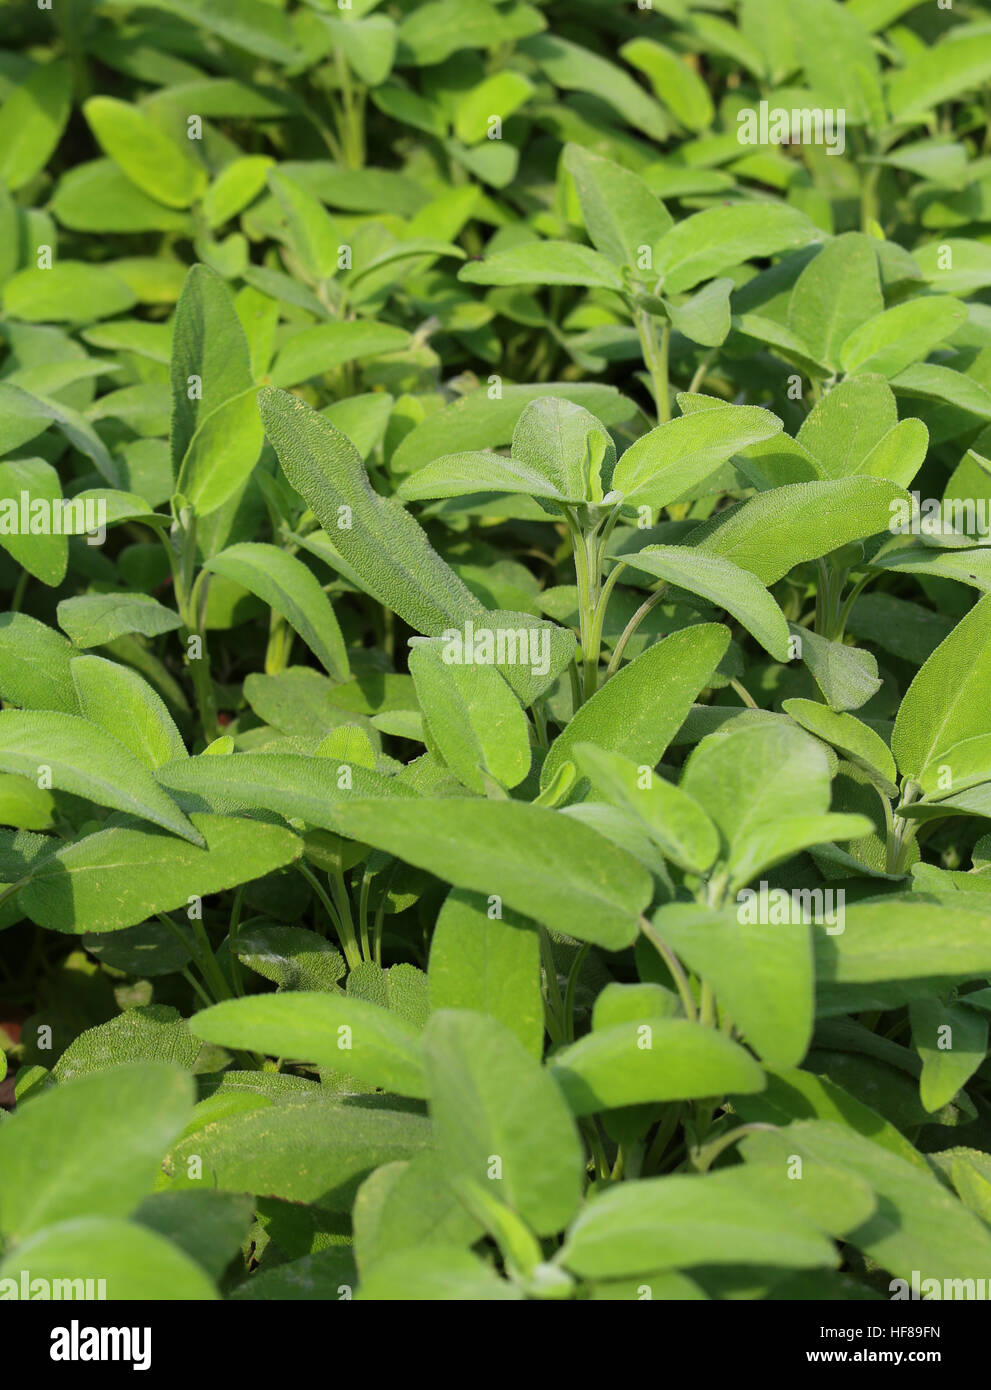 Fondo perfecto de hojas verdes de la salvia planta aromática Foto de stock